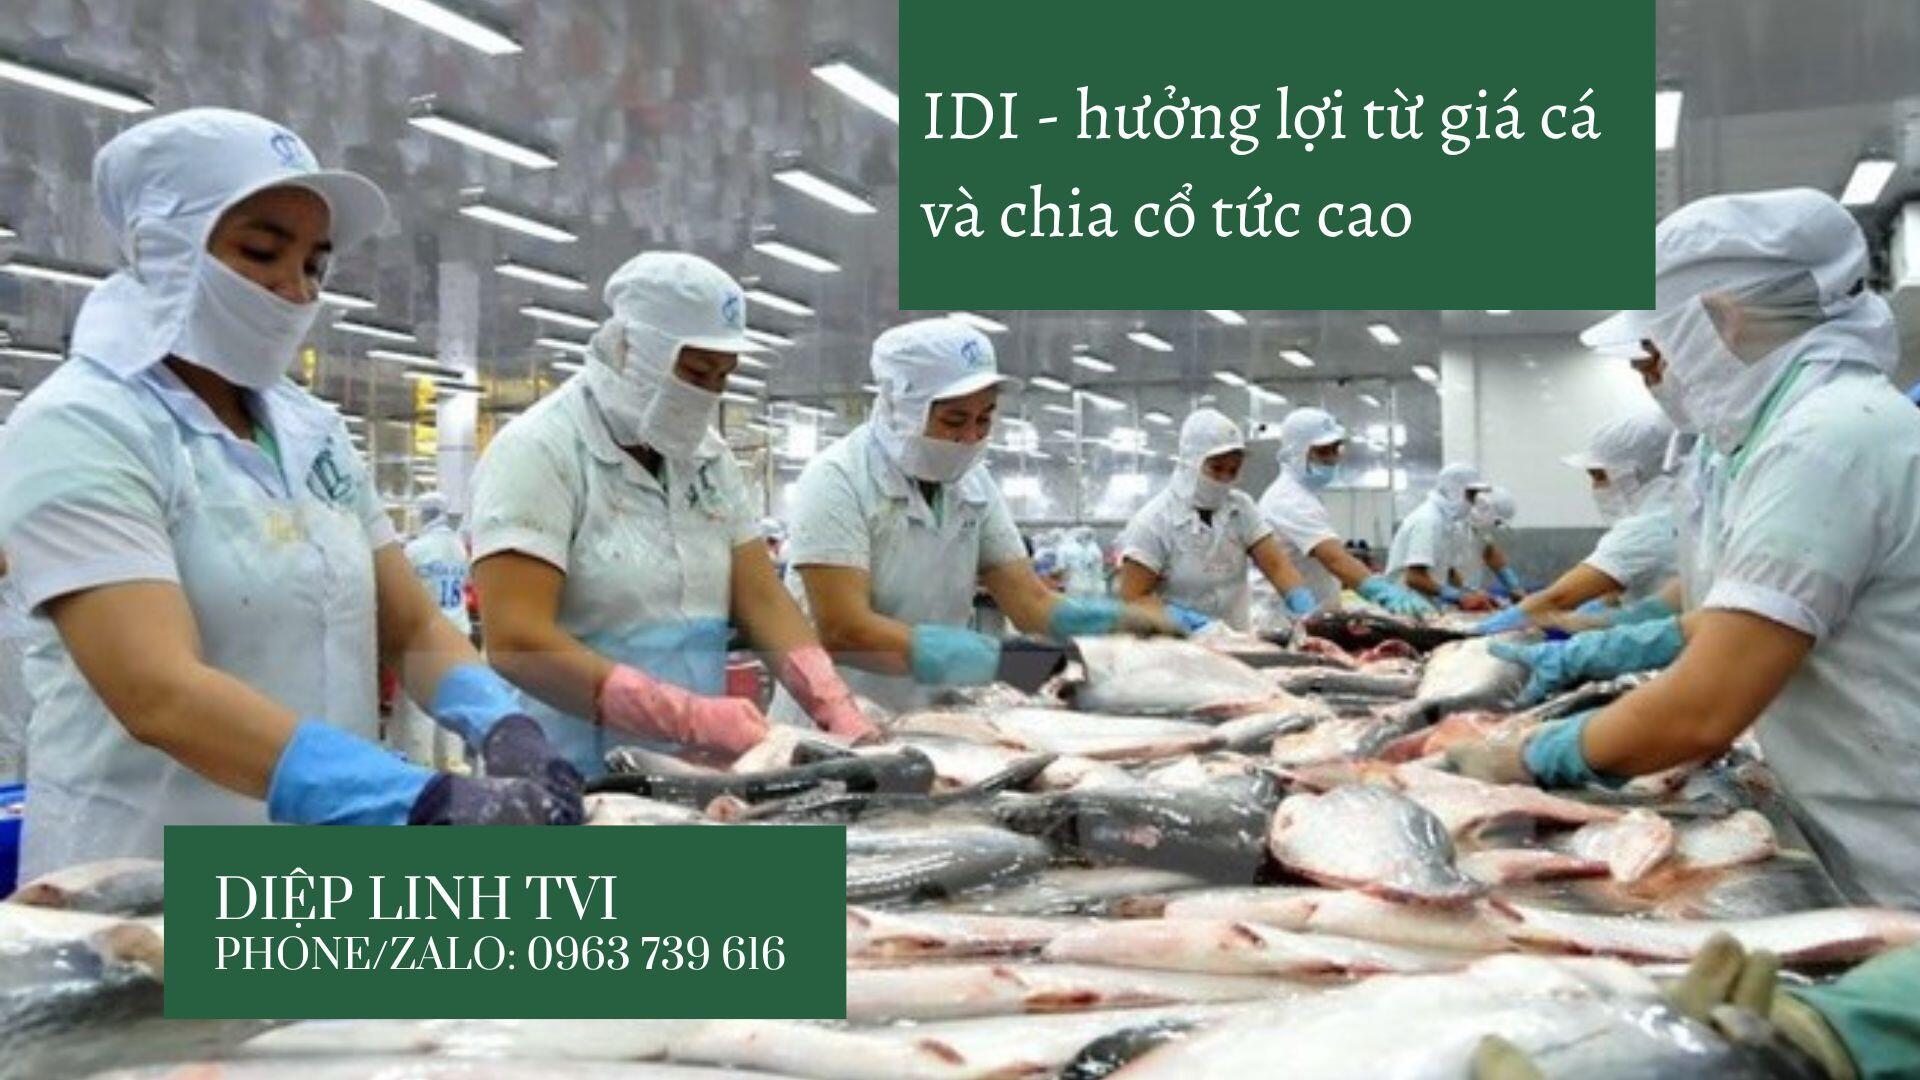 Thủy sản IDI sắp chia cổ tức bằng tiền trong tháng 9 + hưởng lợi từ giá cá tra neo cao